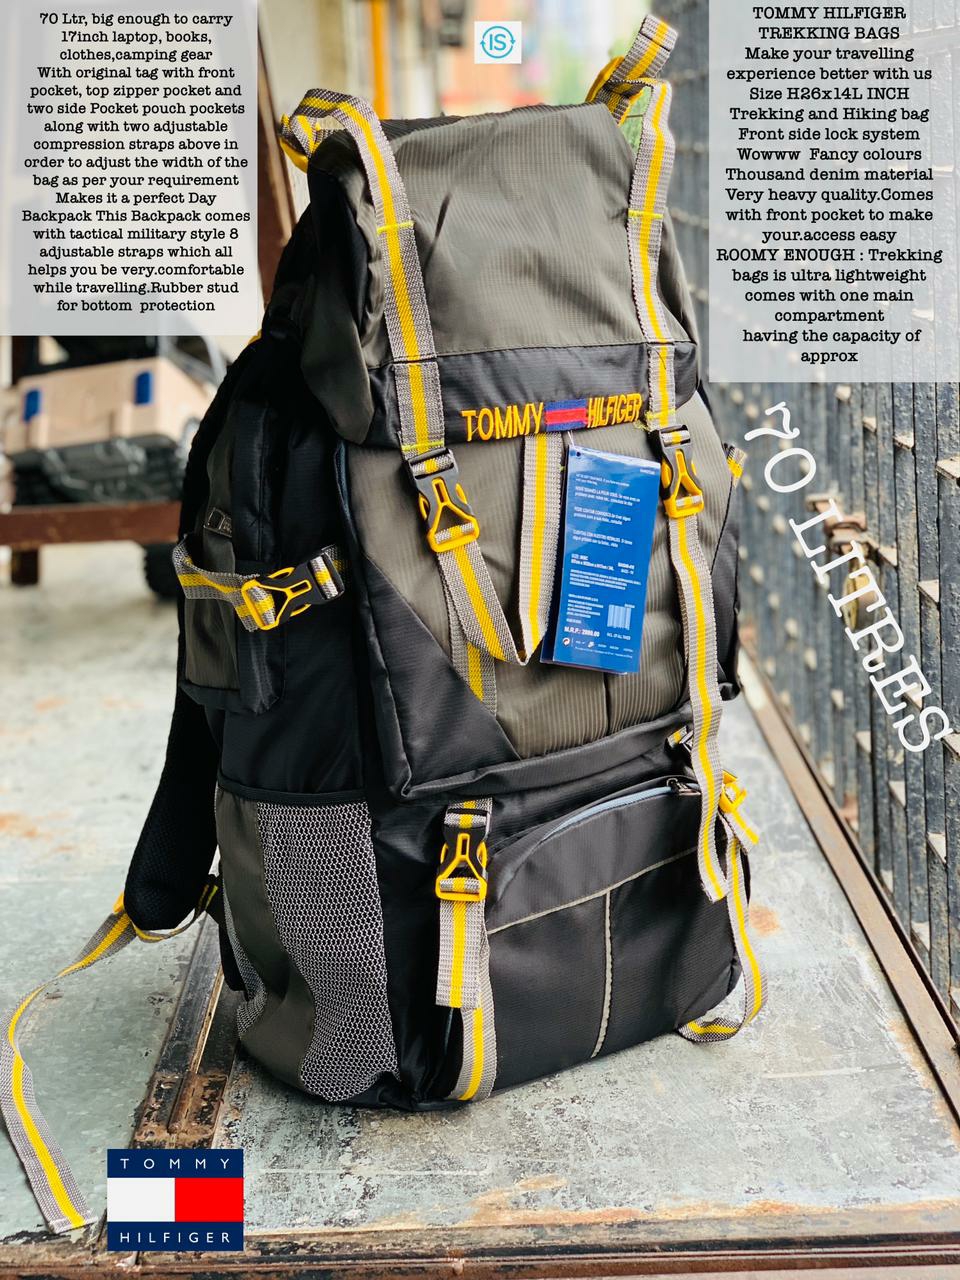 Trekking Travel Bags - Buy Trekking Travel Bags online in India